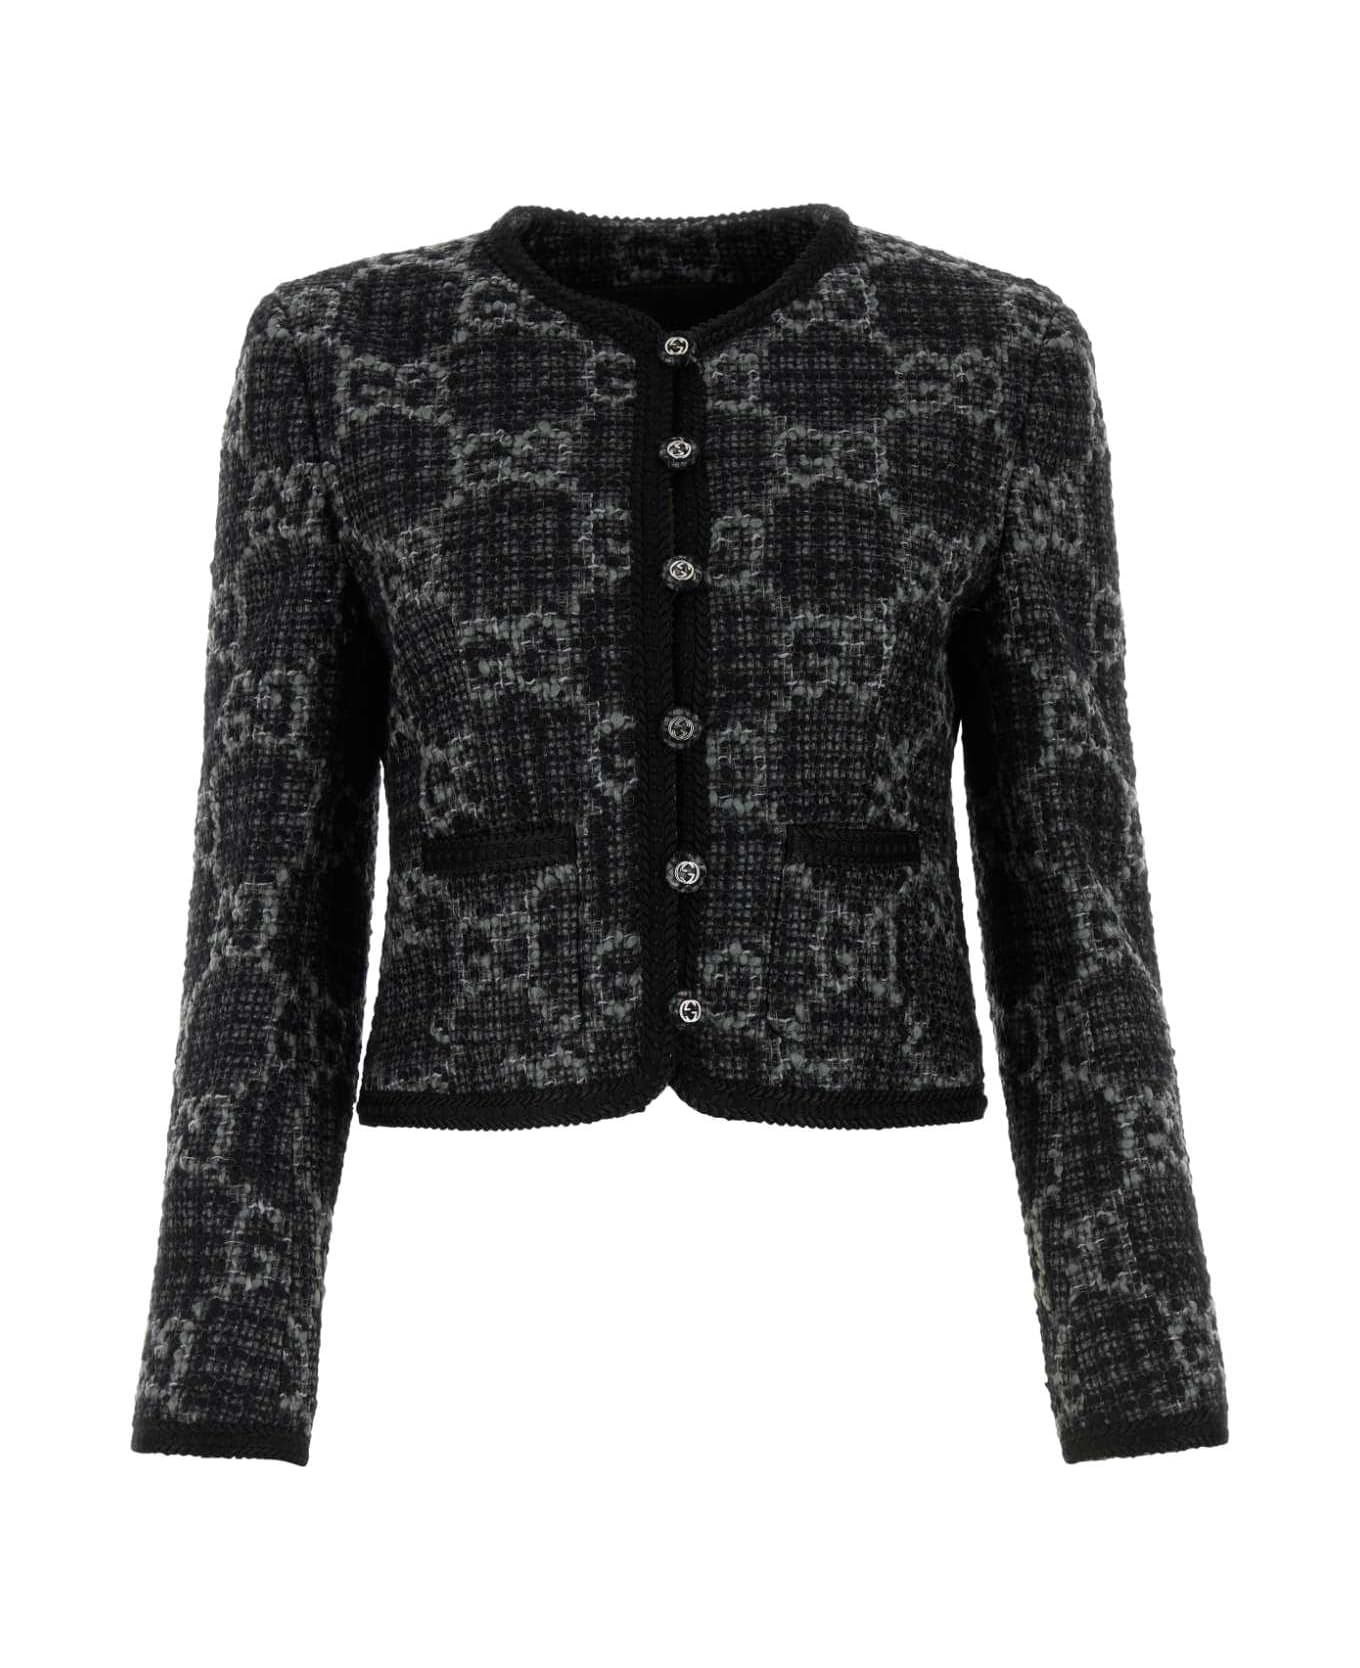 Gucci Embroidered Tweed Blazer - DARKGREYGREYMIX